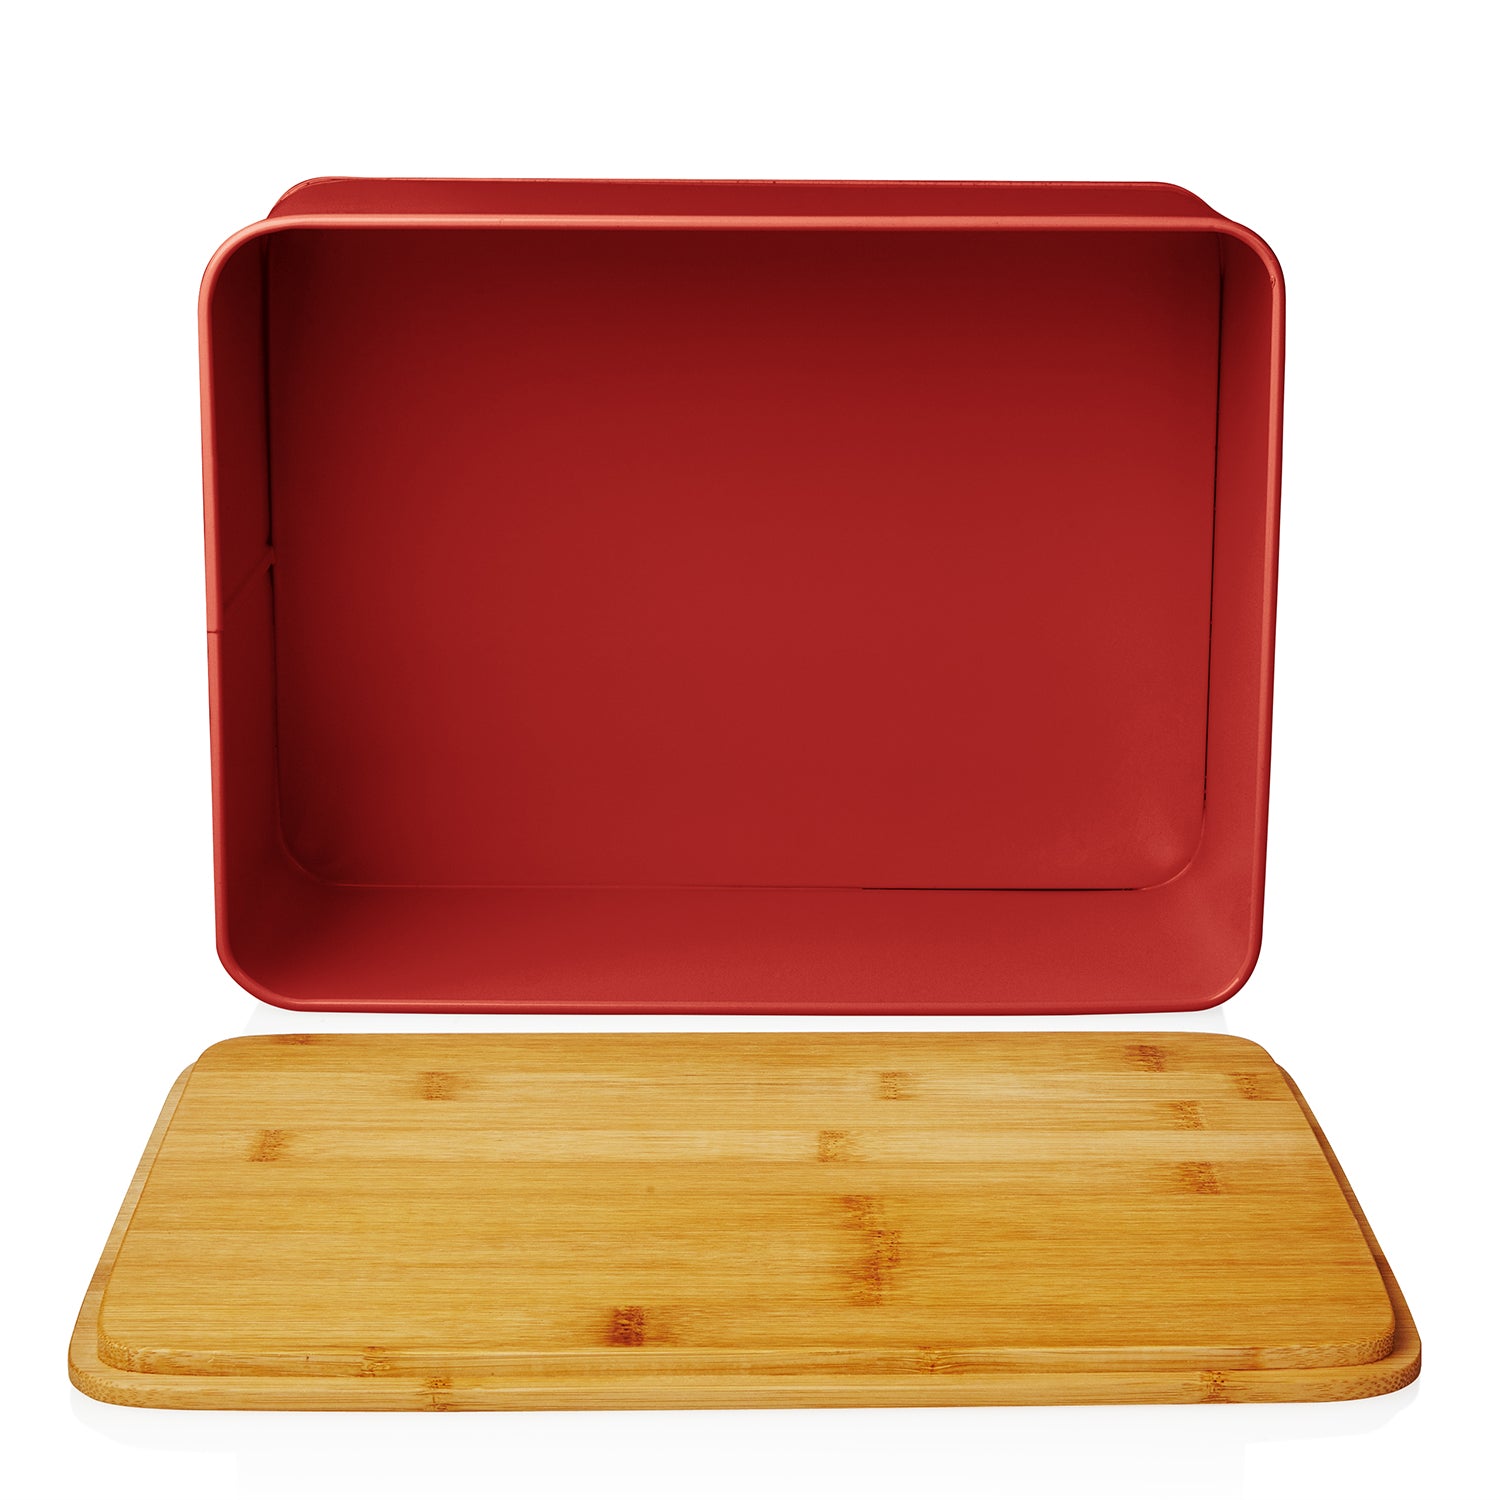 Cuisine Brotkasten aus Metall mit Bambus Deckel - Rechteckig 30,5 x 23,5 x 14 cm - Rot